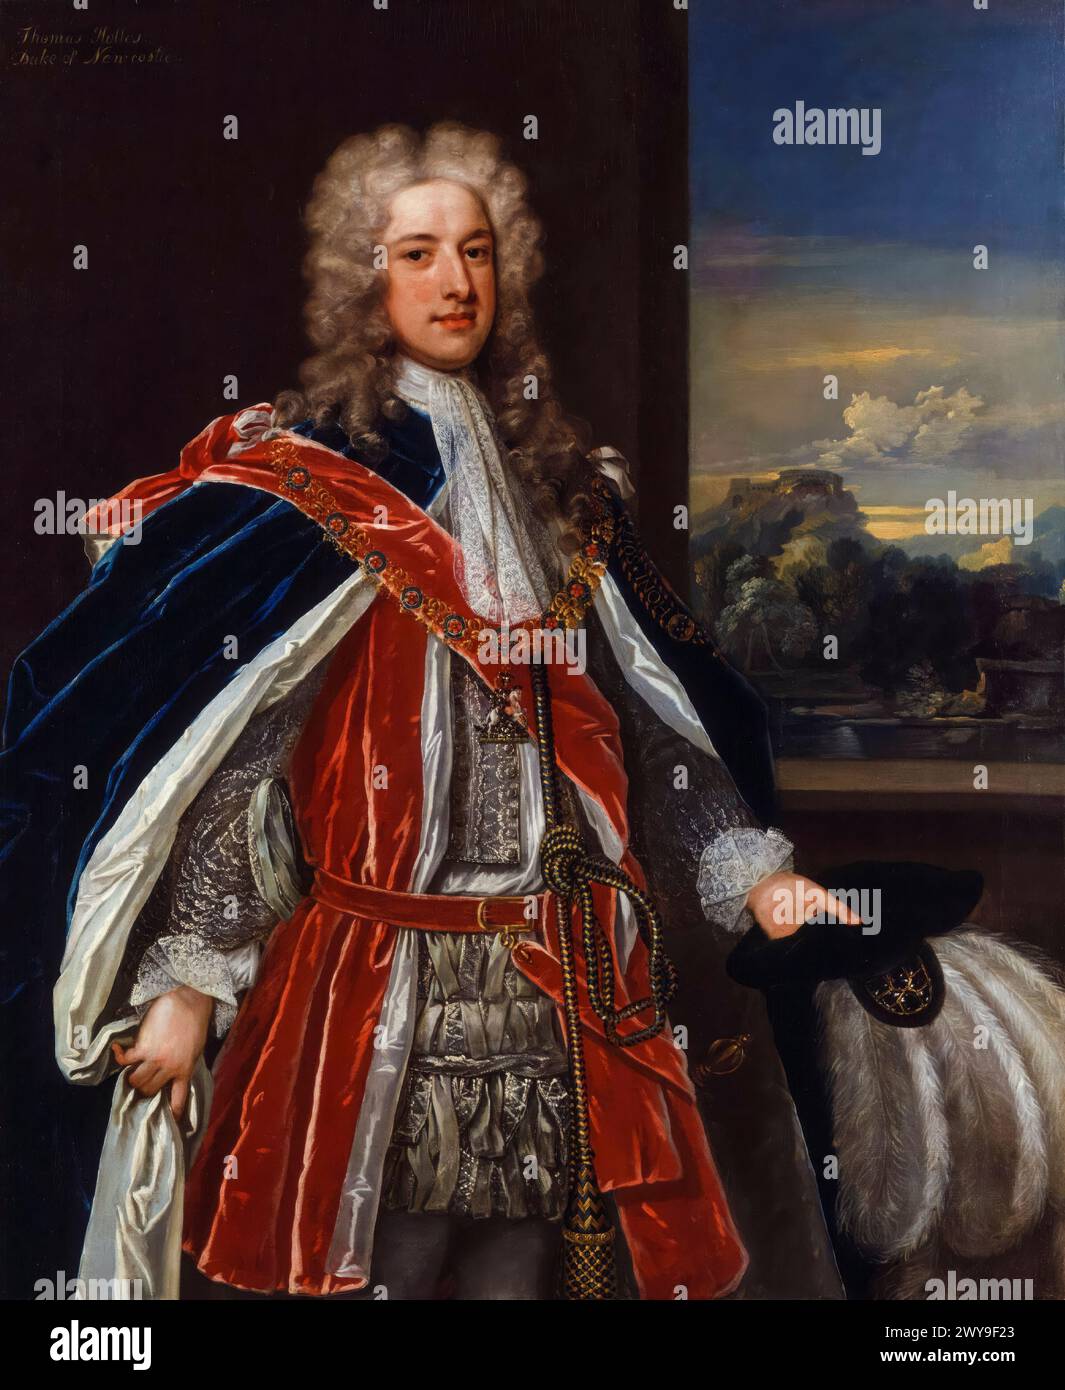 Thomas Pelham-Holles, i duca di Newcastle upon Tyne (1693-1768), politico Whig e primo ministro della Gran Bretagna due volte dal 1754-1756 e 1757-1762, ritratto a olio su tela di Charles Jervas (attribuito), circa 1721 Foto Stock